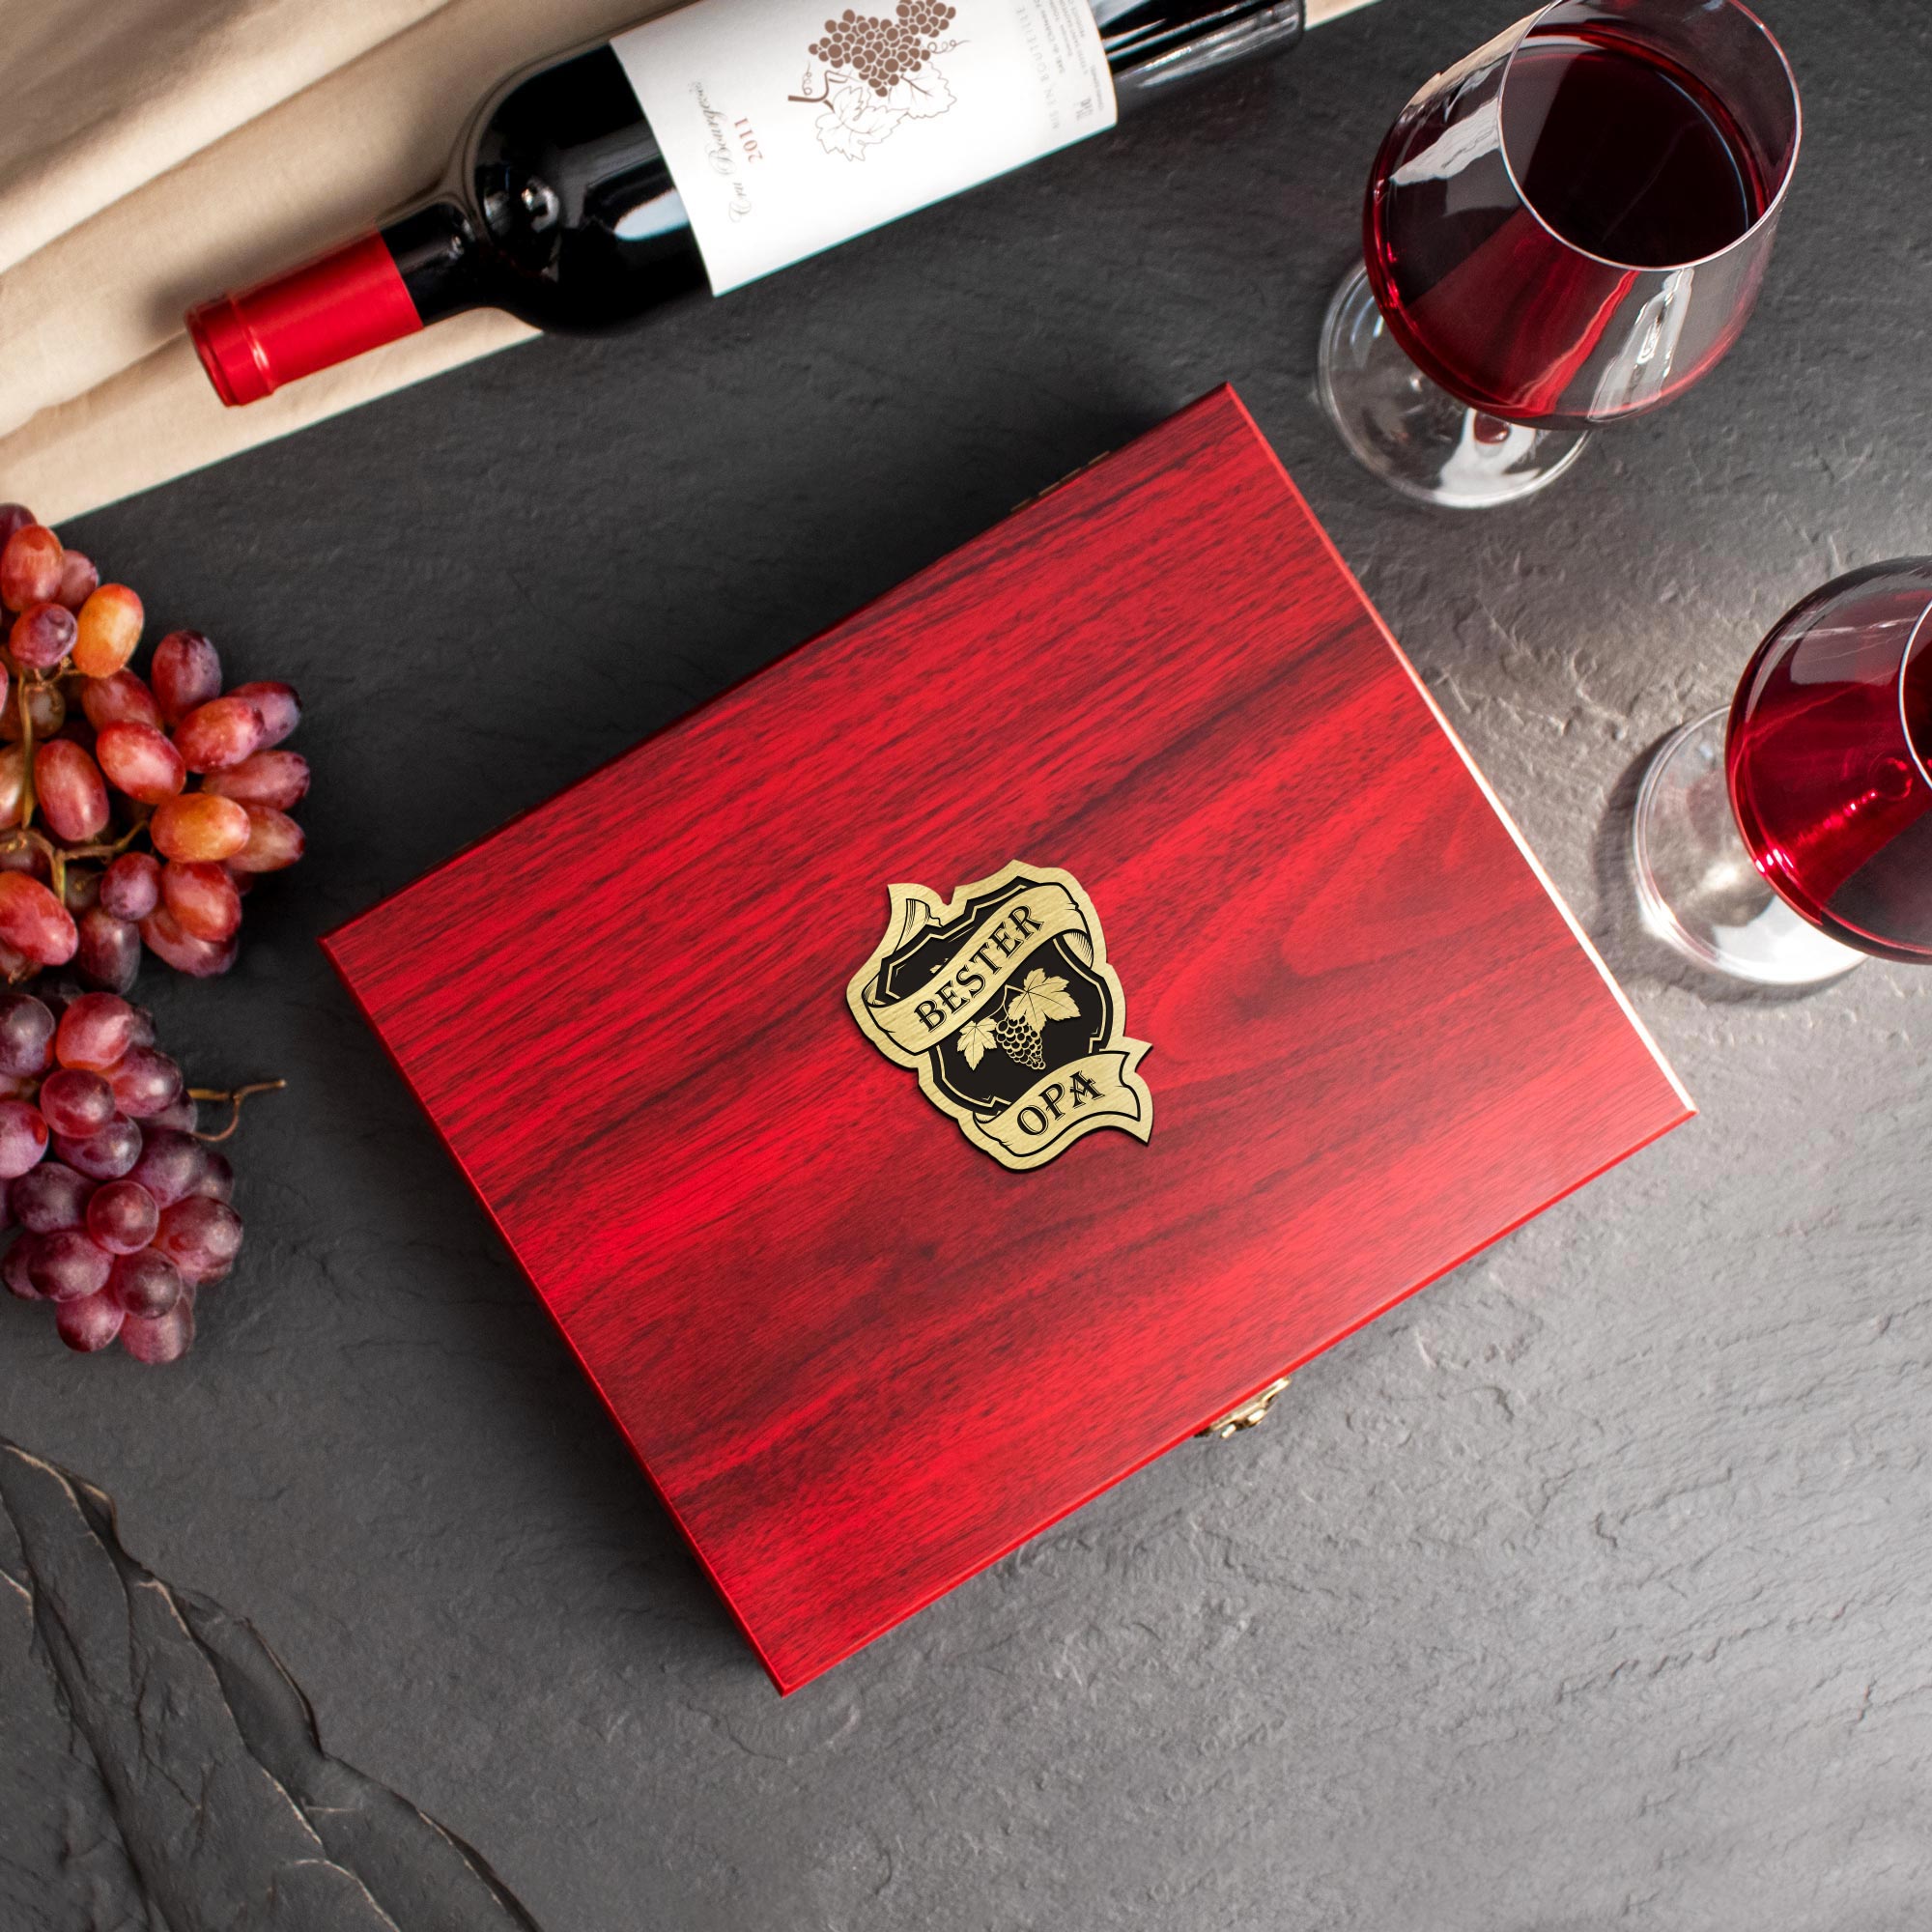 Sommelier Weinset 10-teilig für den besten Opa, Wein Zubehör im Geschenkset mit Gravur, Weinsommelier Set in Holzbox als Geschenk für Weinliebhaber